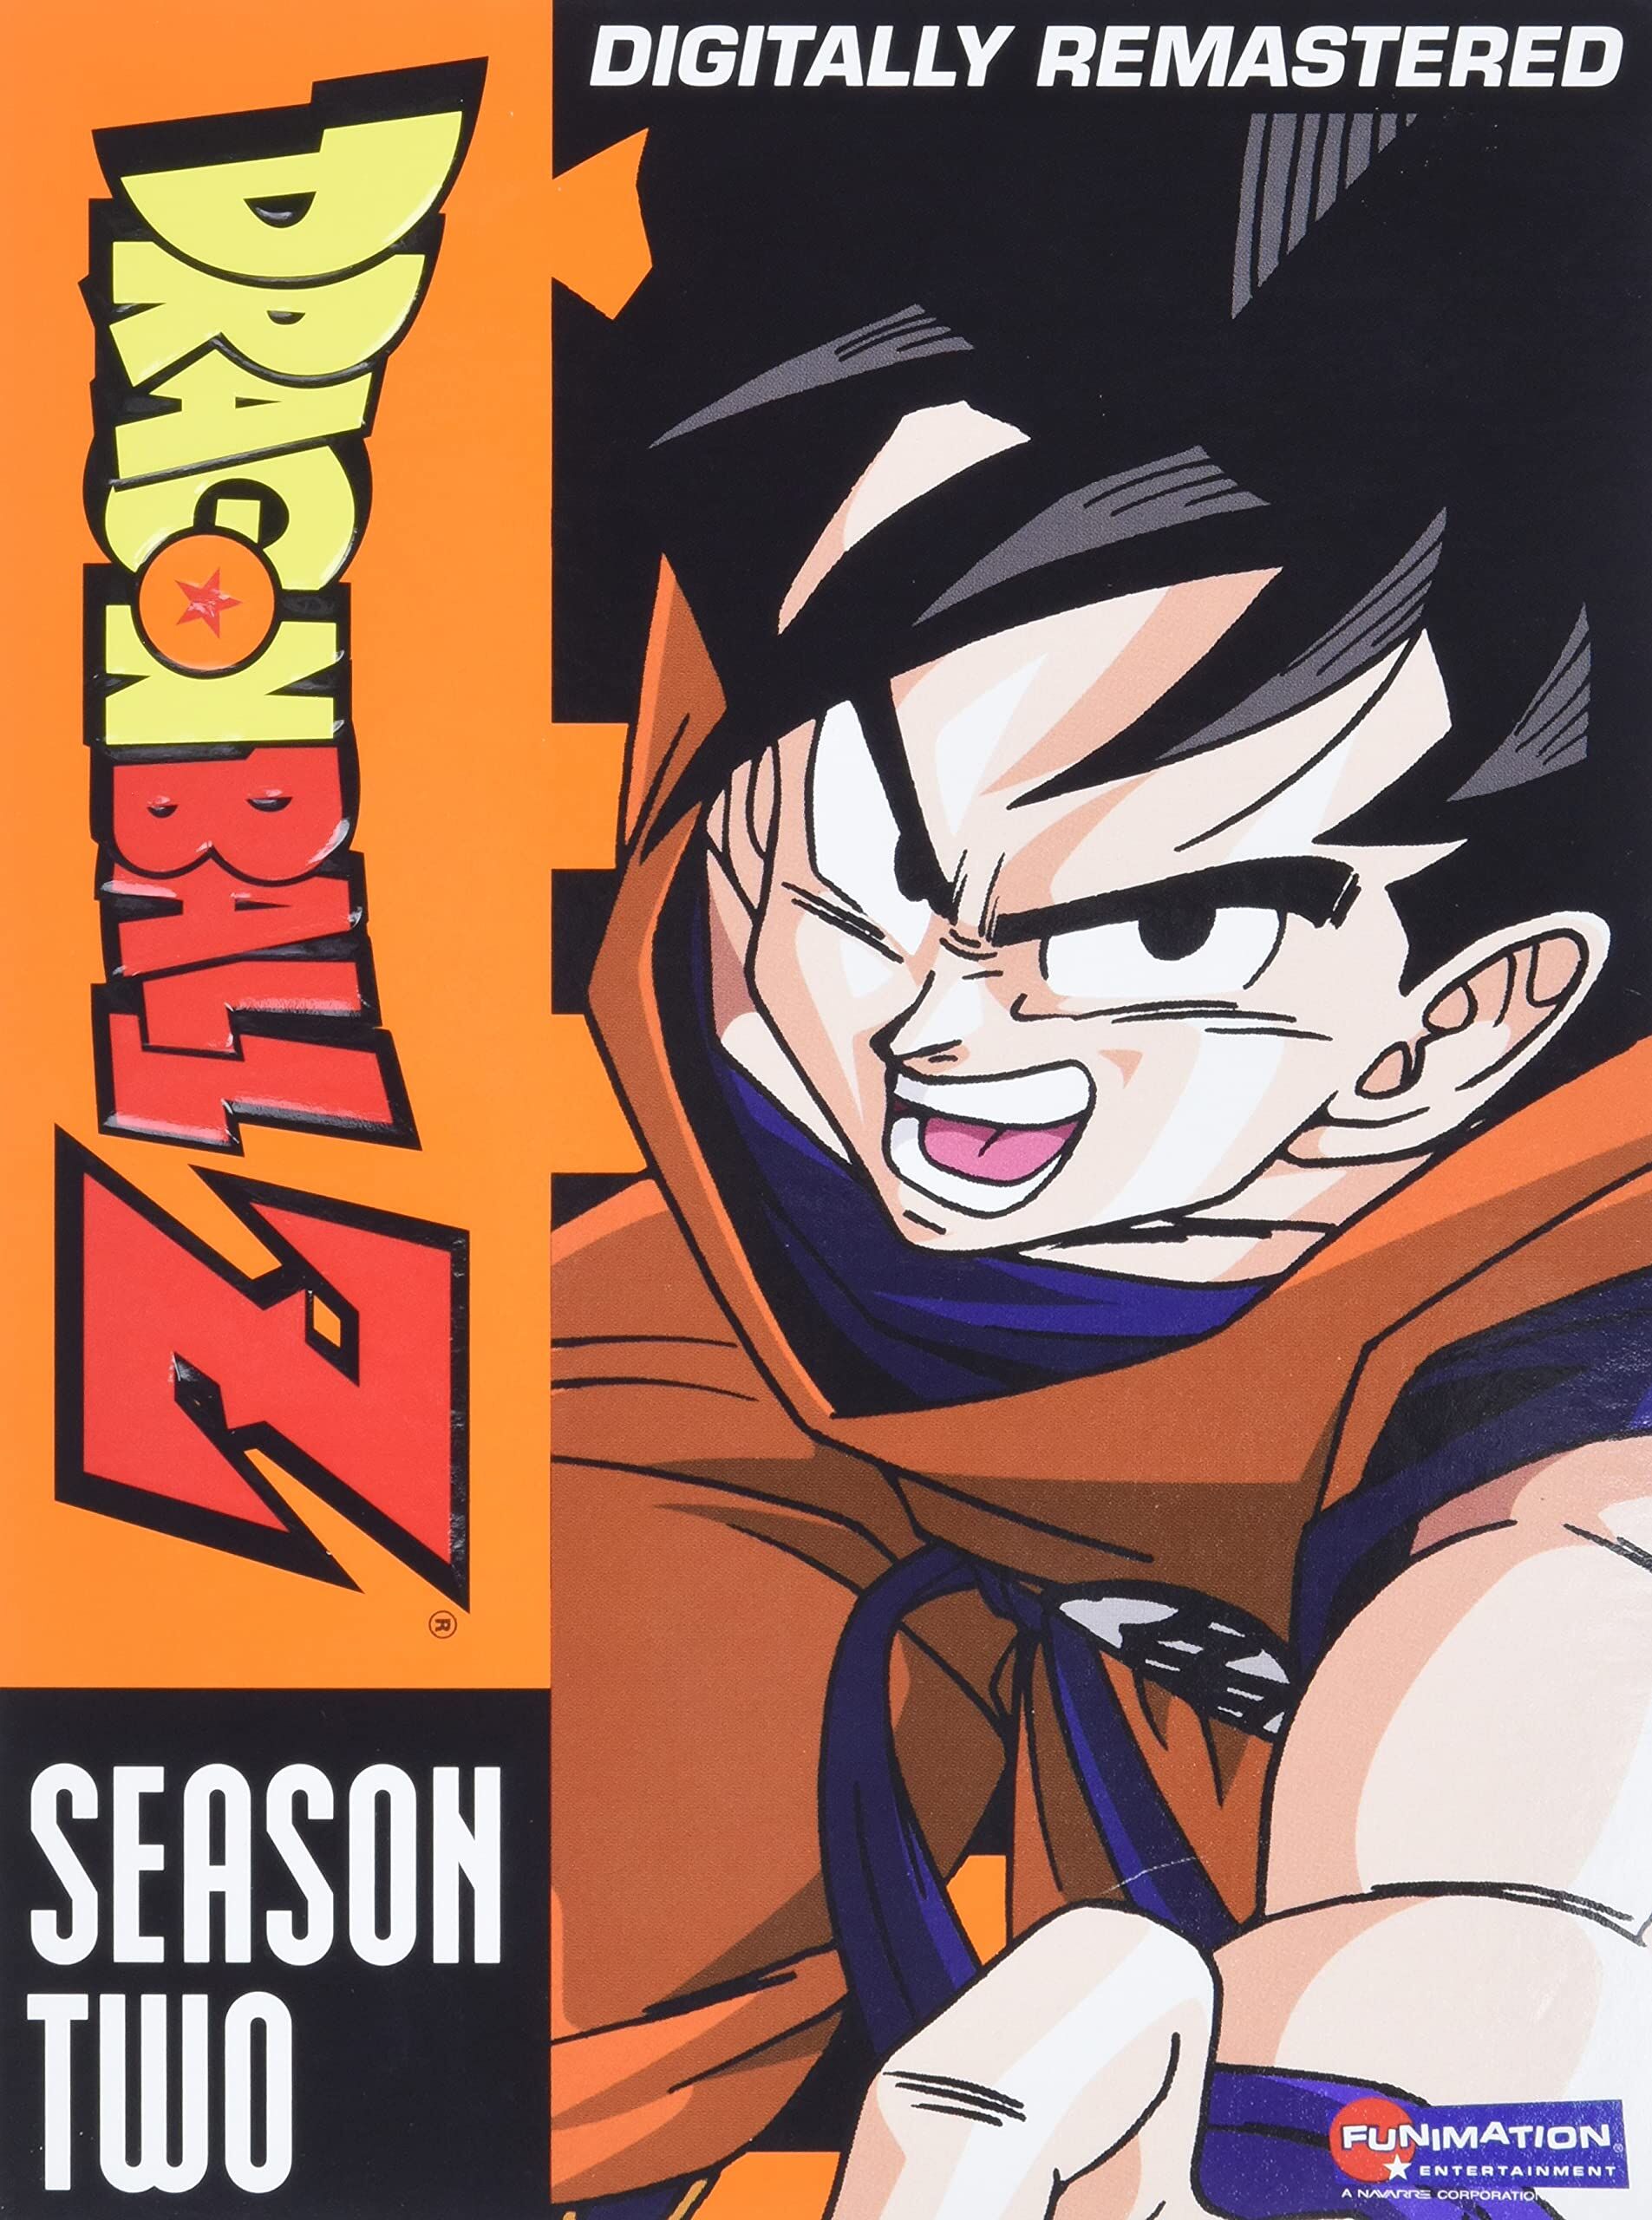 Dragon Ball Z: Season Five (Blu-ray), Dragon Ball Wiki